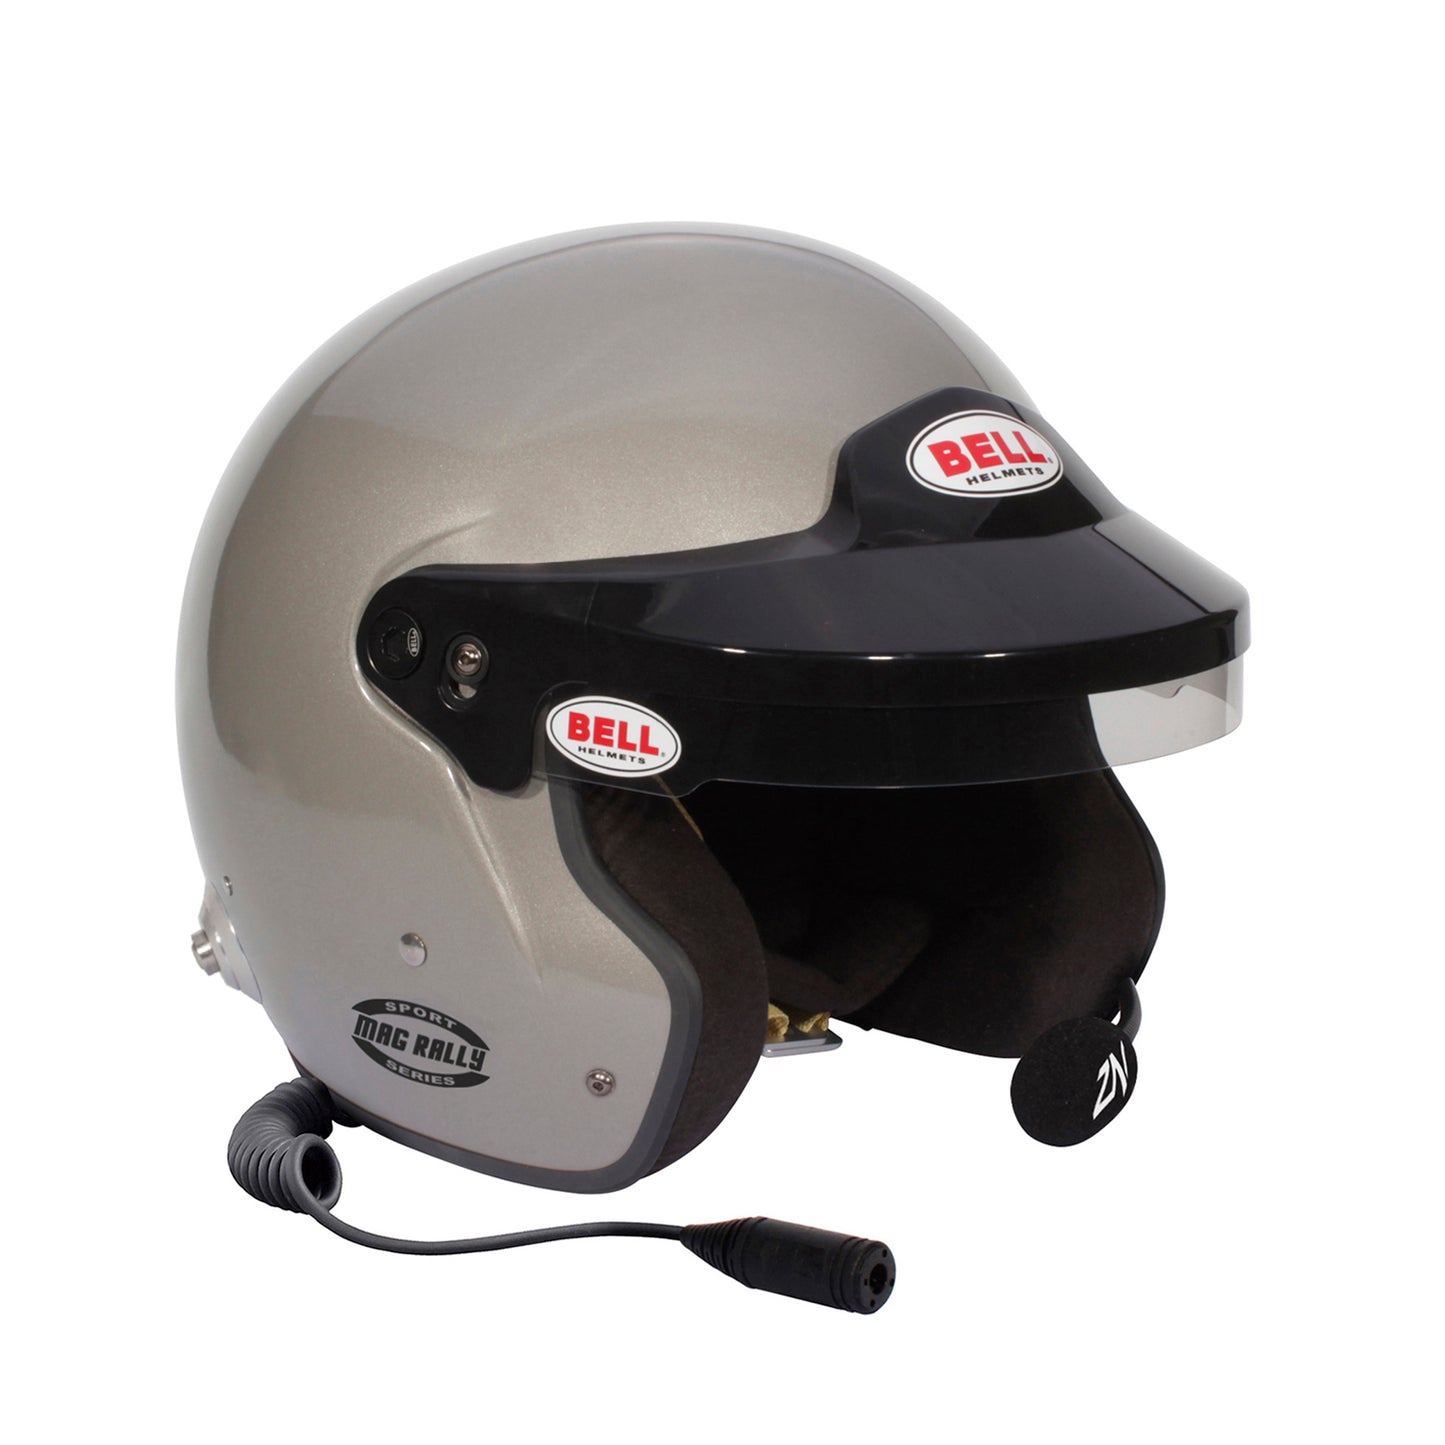 BELL MAG Rally (HANS) Jet helmet